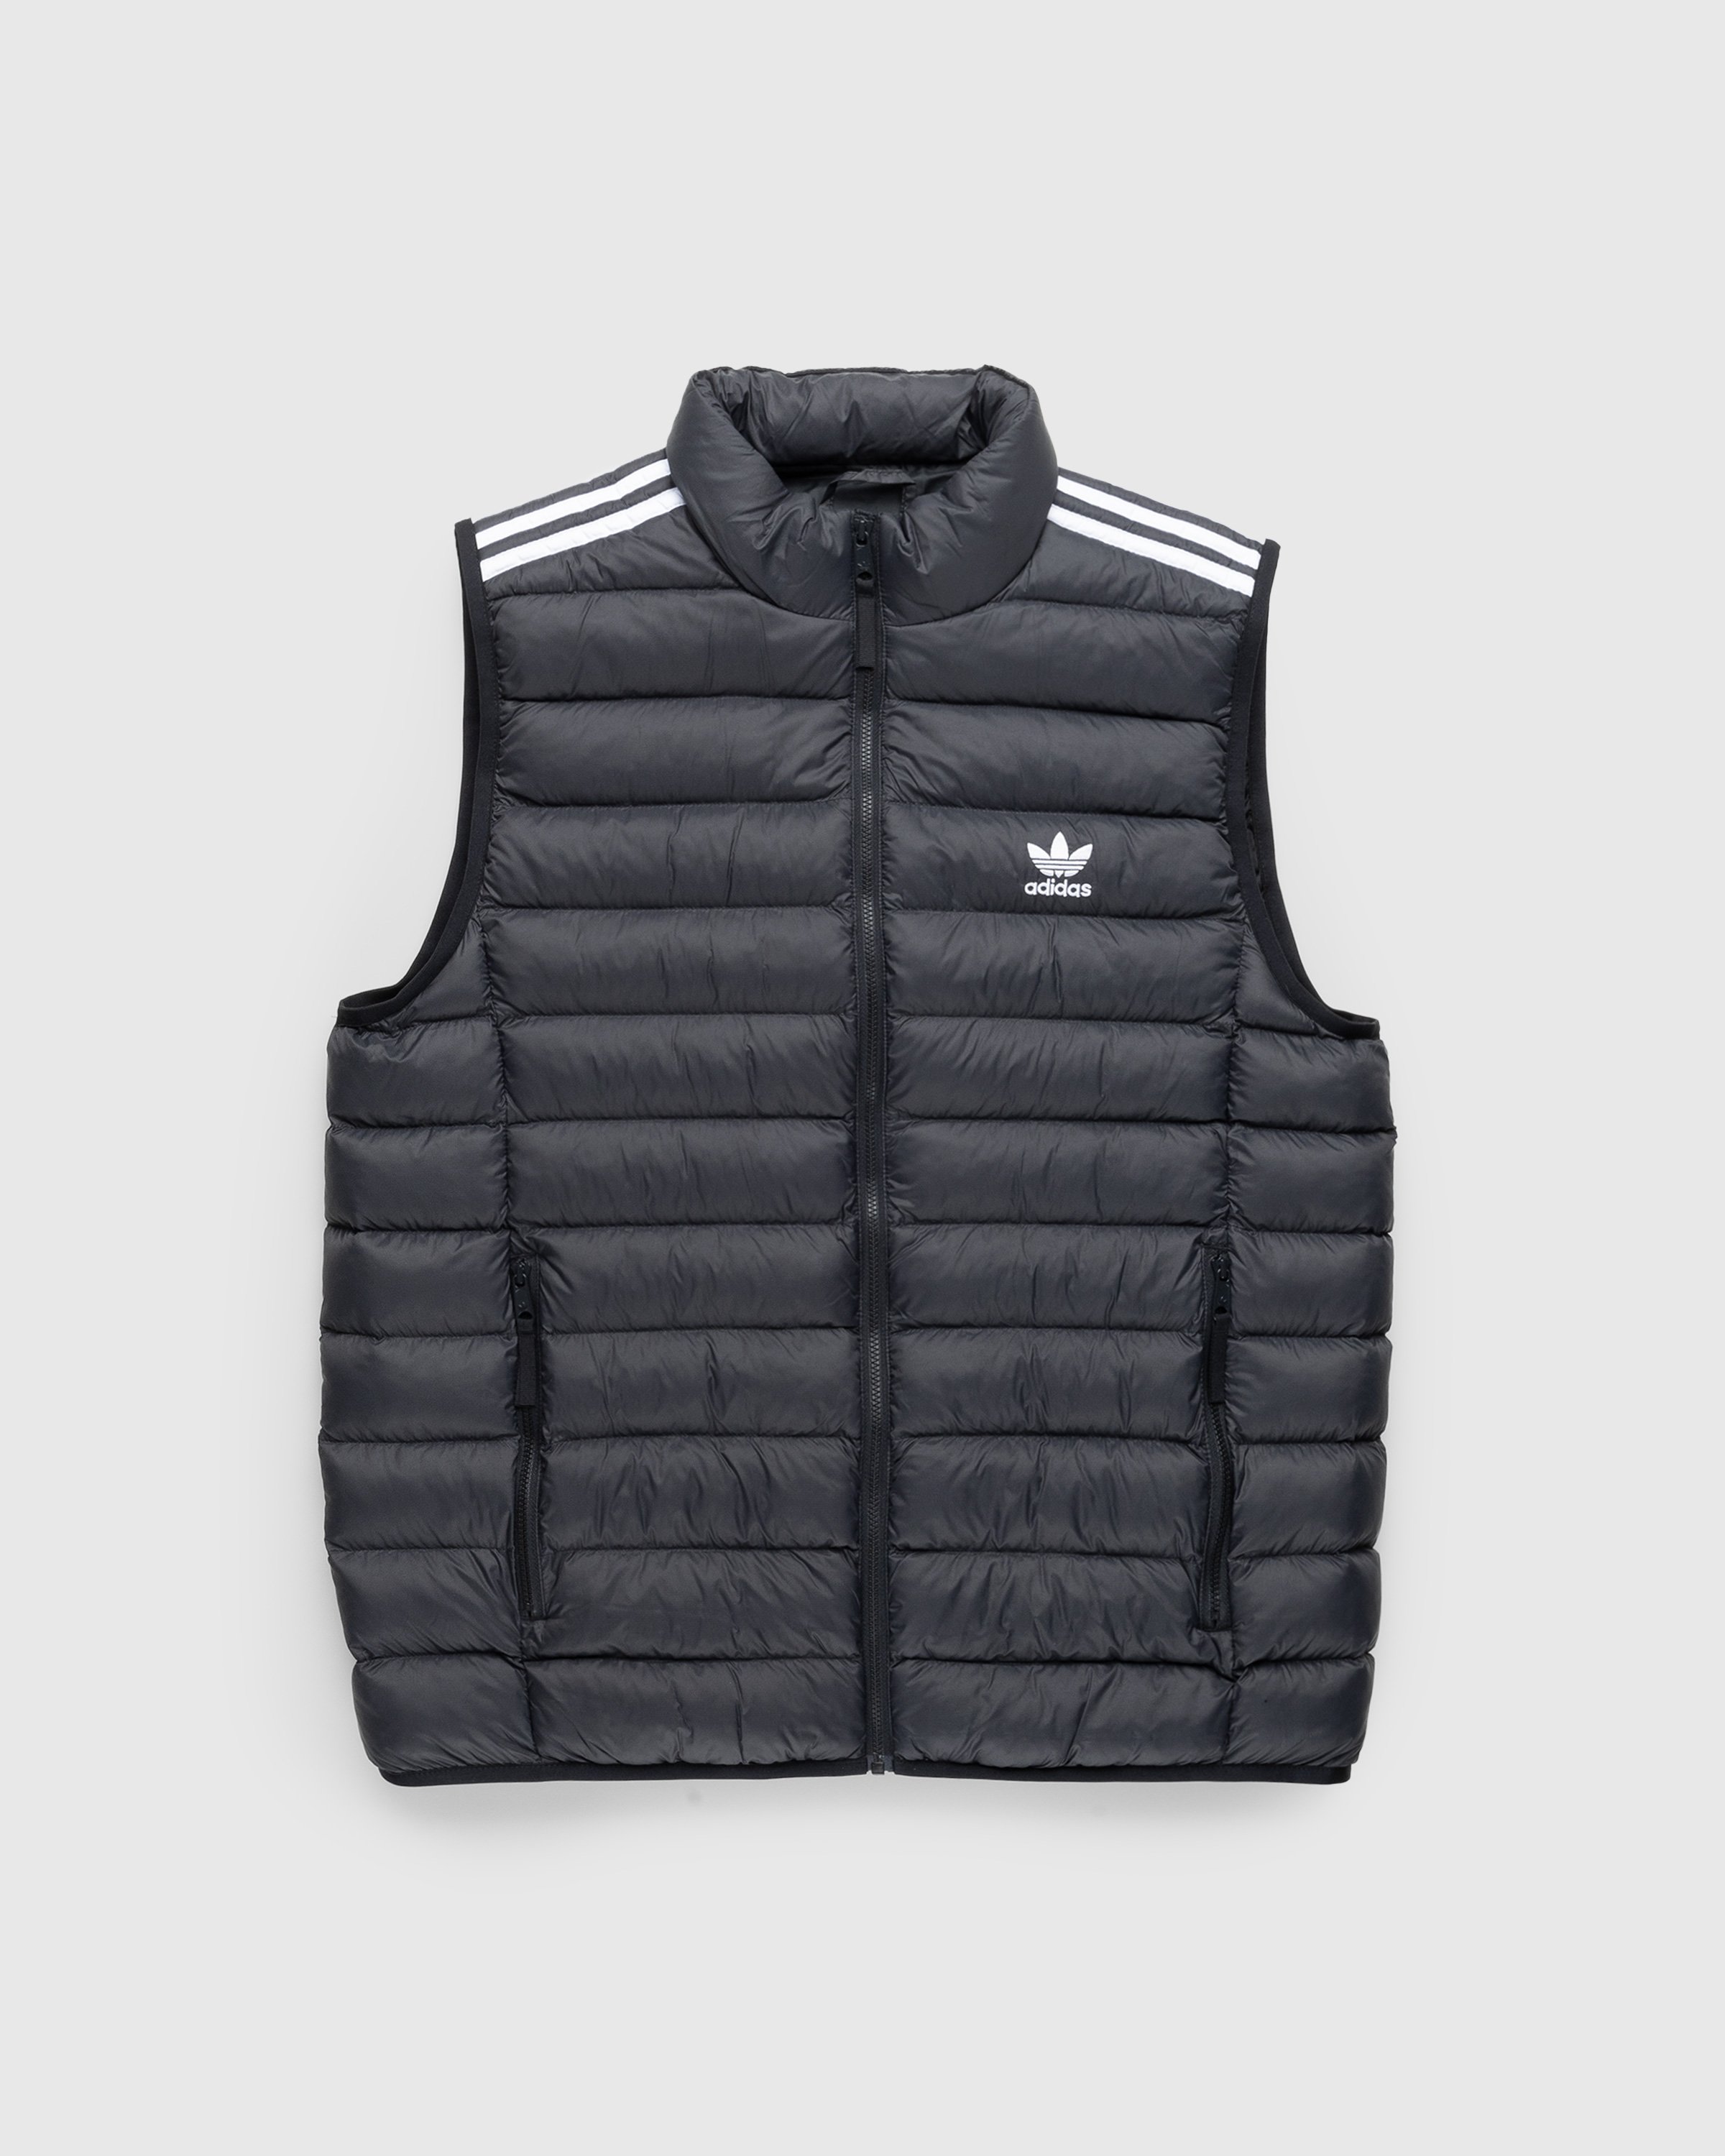 Adidas – Padded | Black/White Highsnobiety Shop Vest